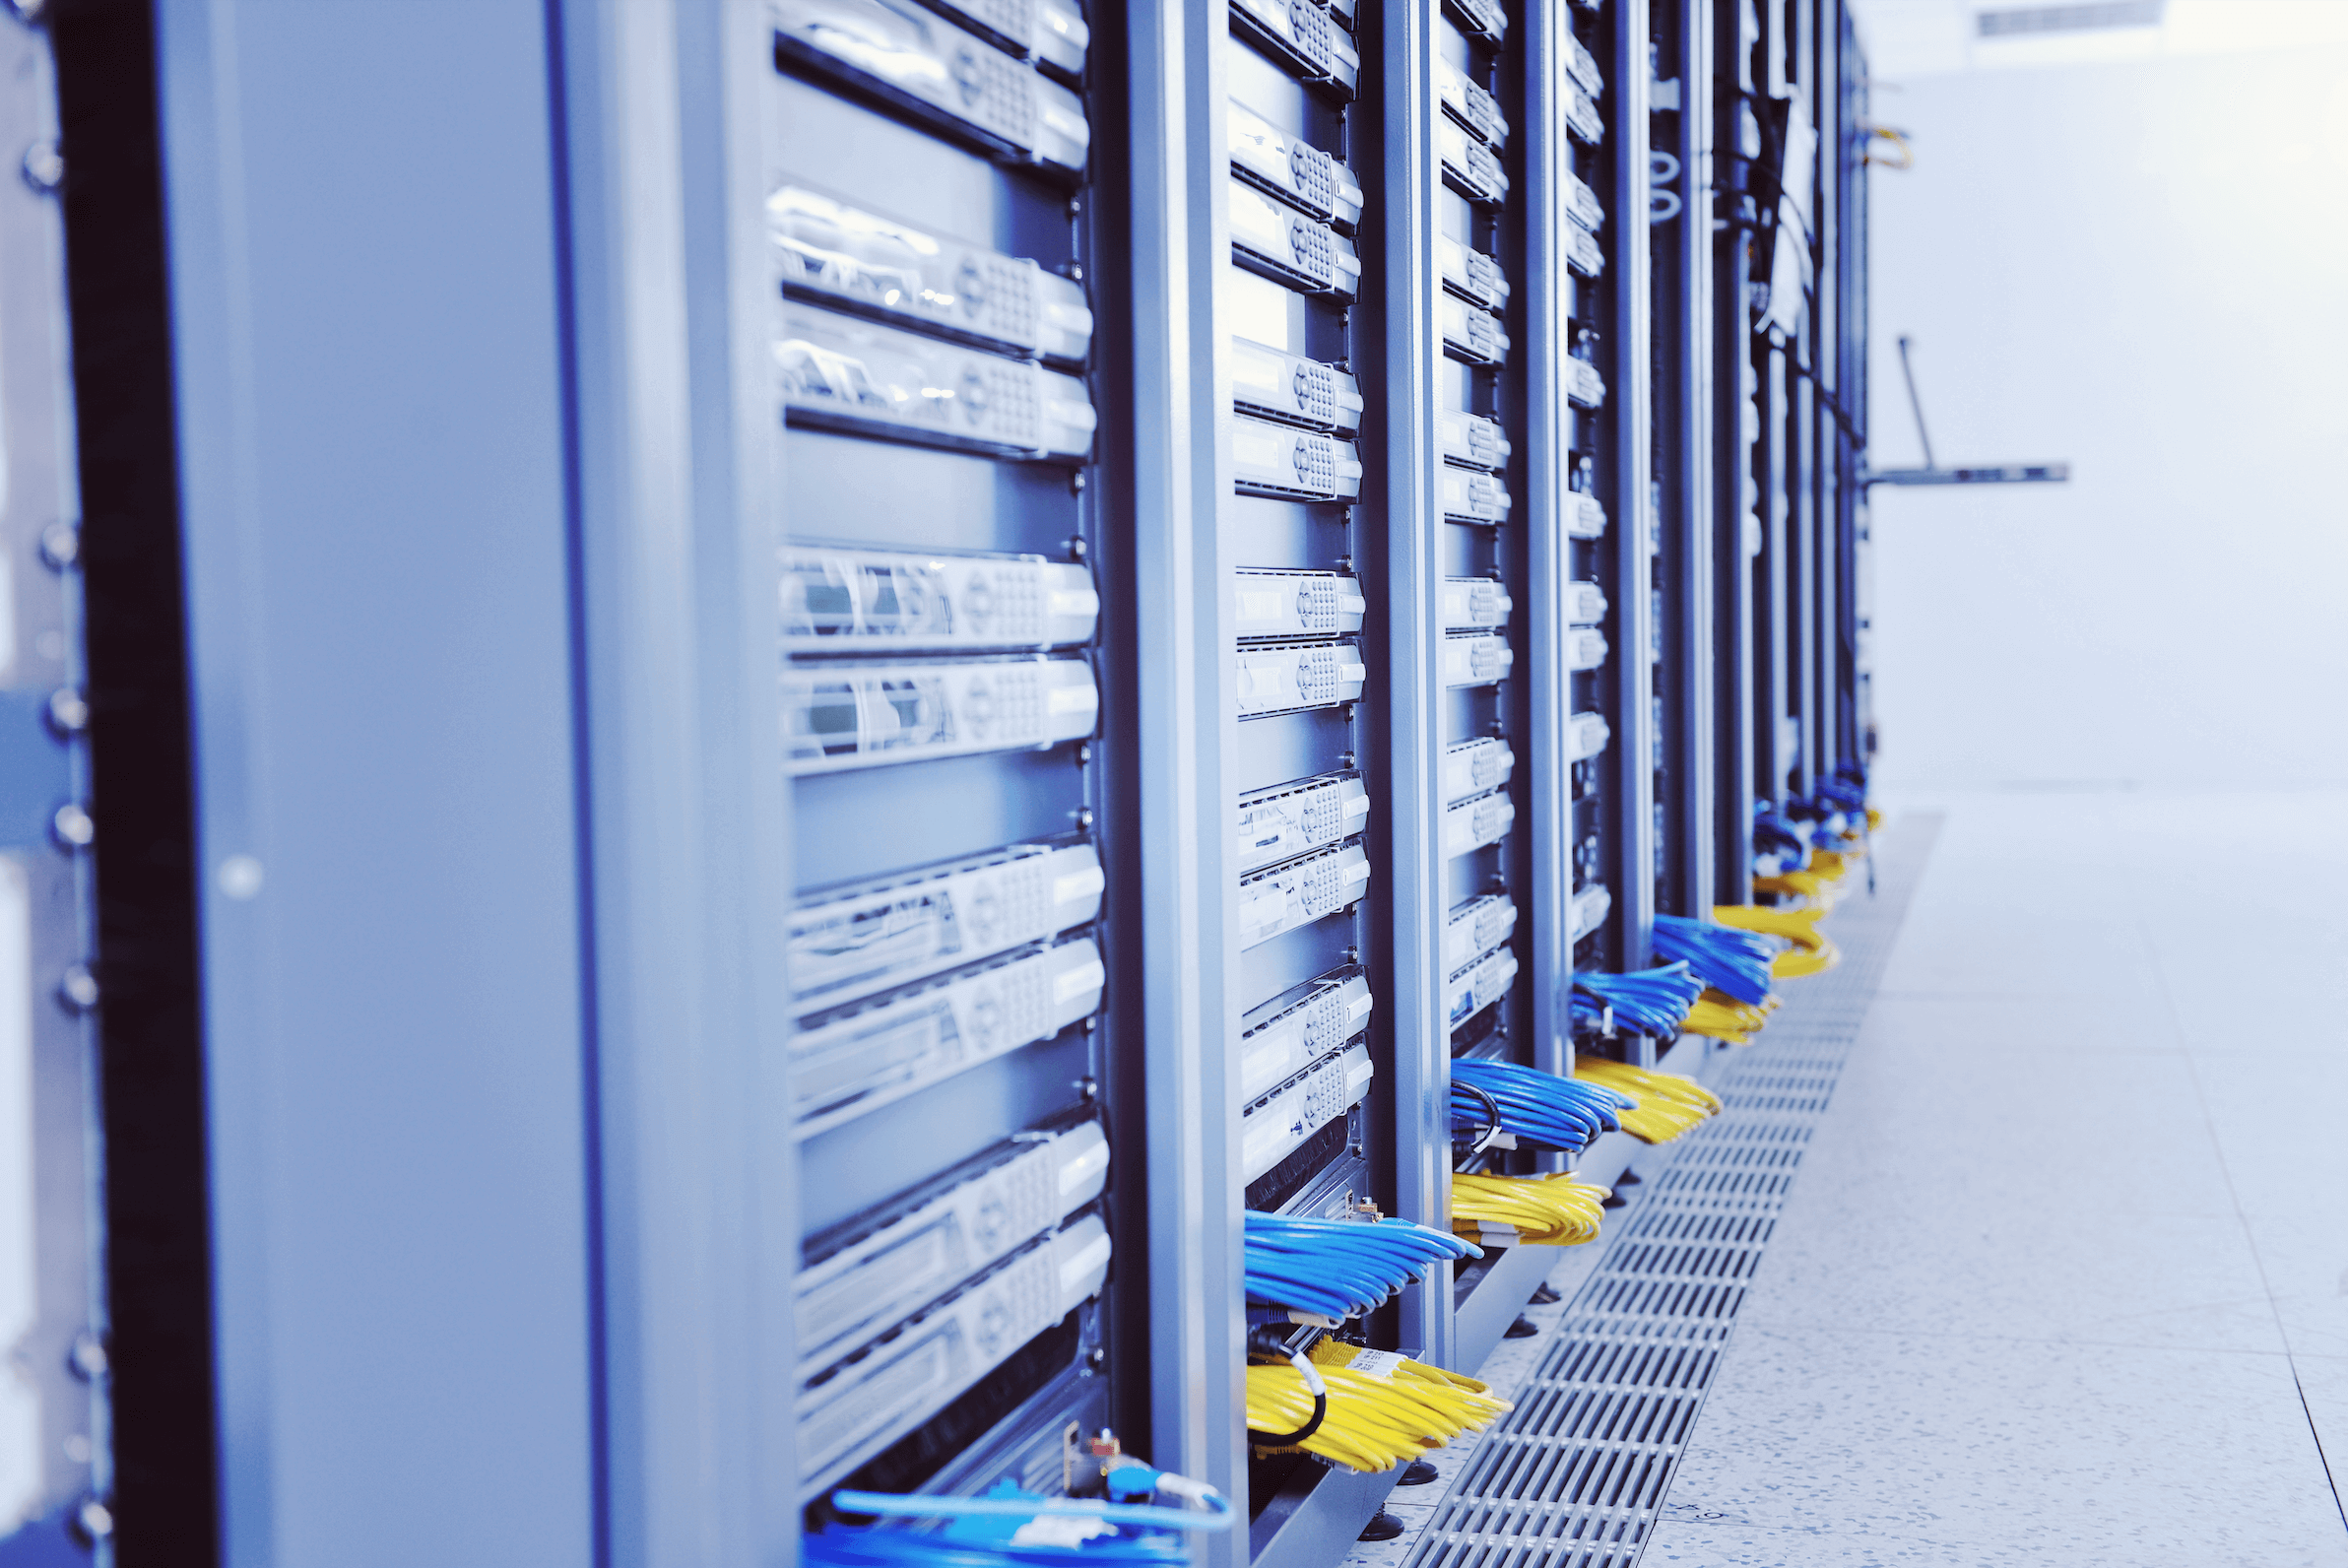 Managed dedicated server hosting